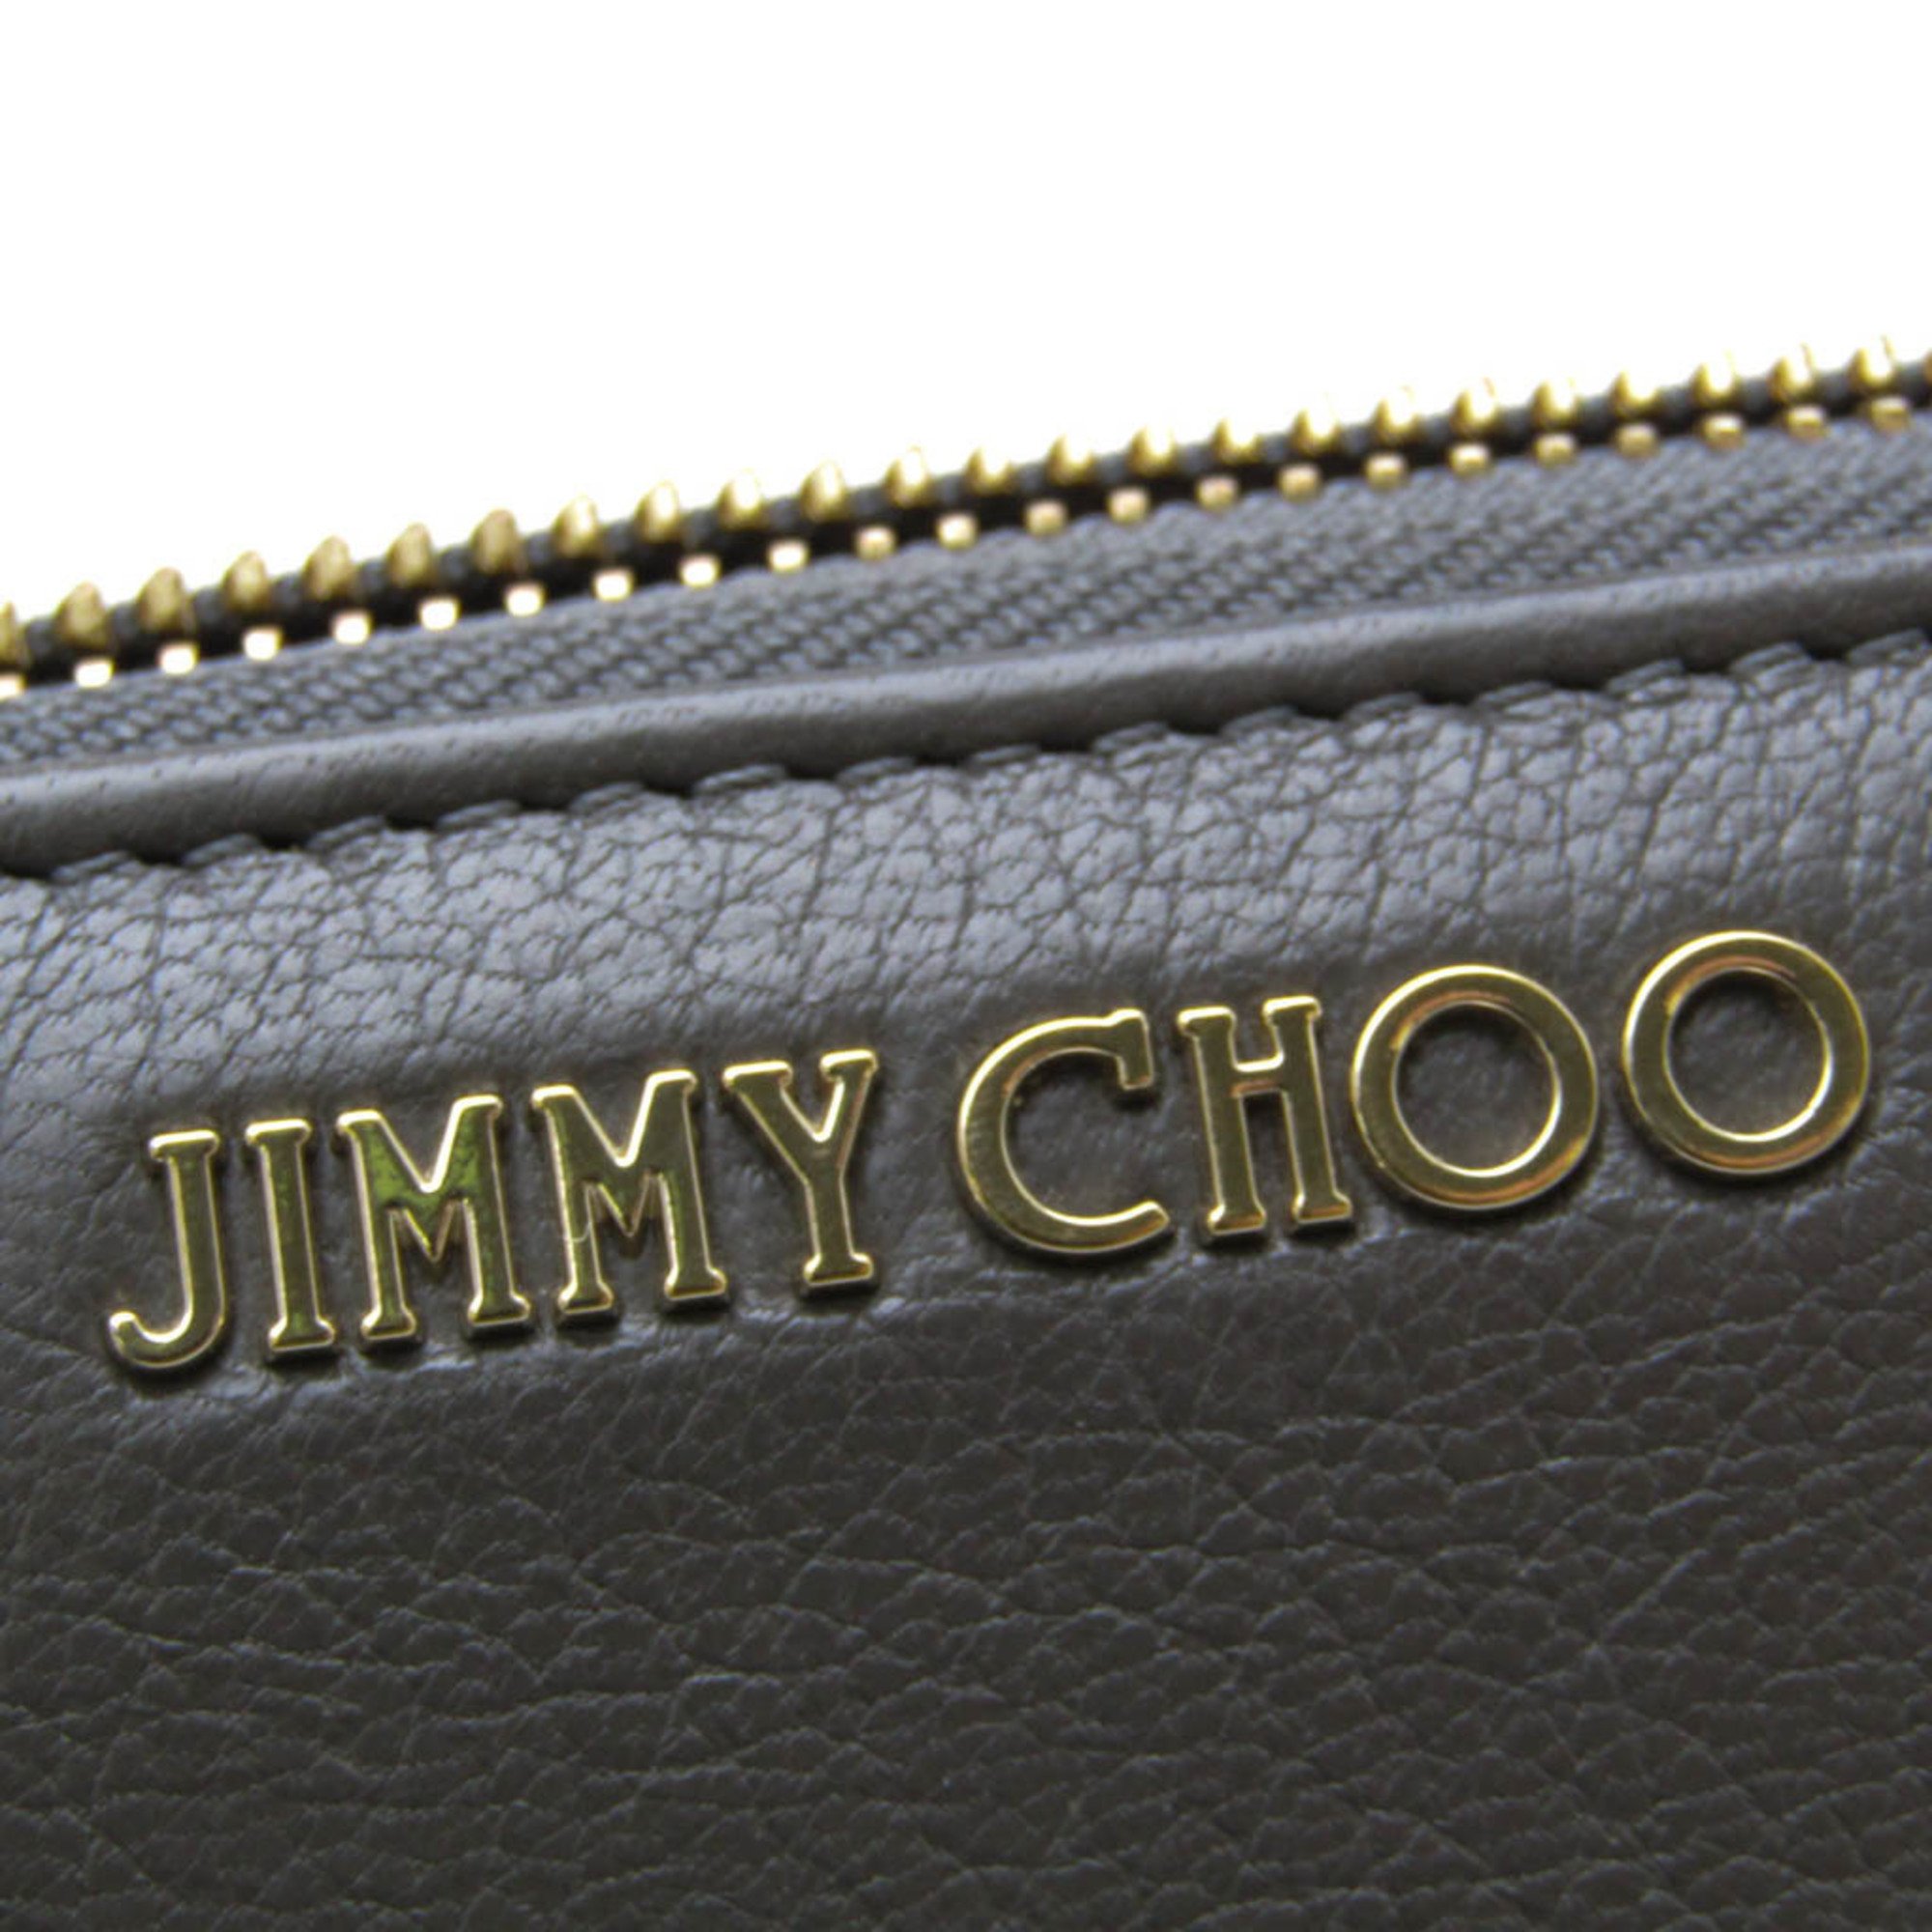 Jimmy Choo PIPPA Women,Men Leather Long Wallet (bi-fold) Dark Gray